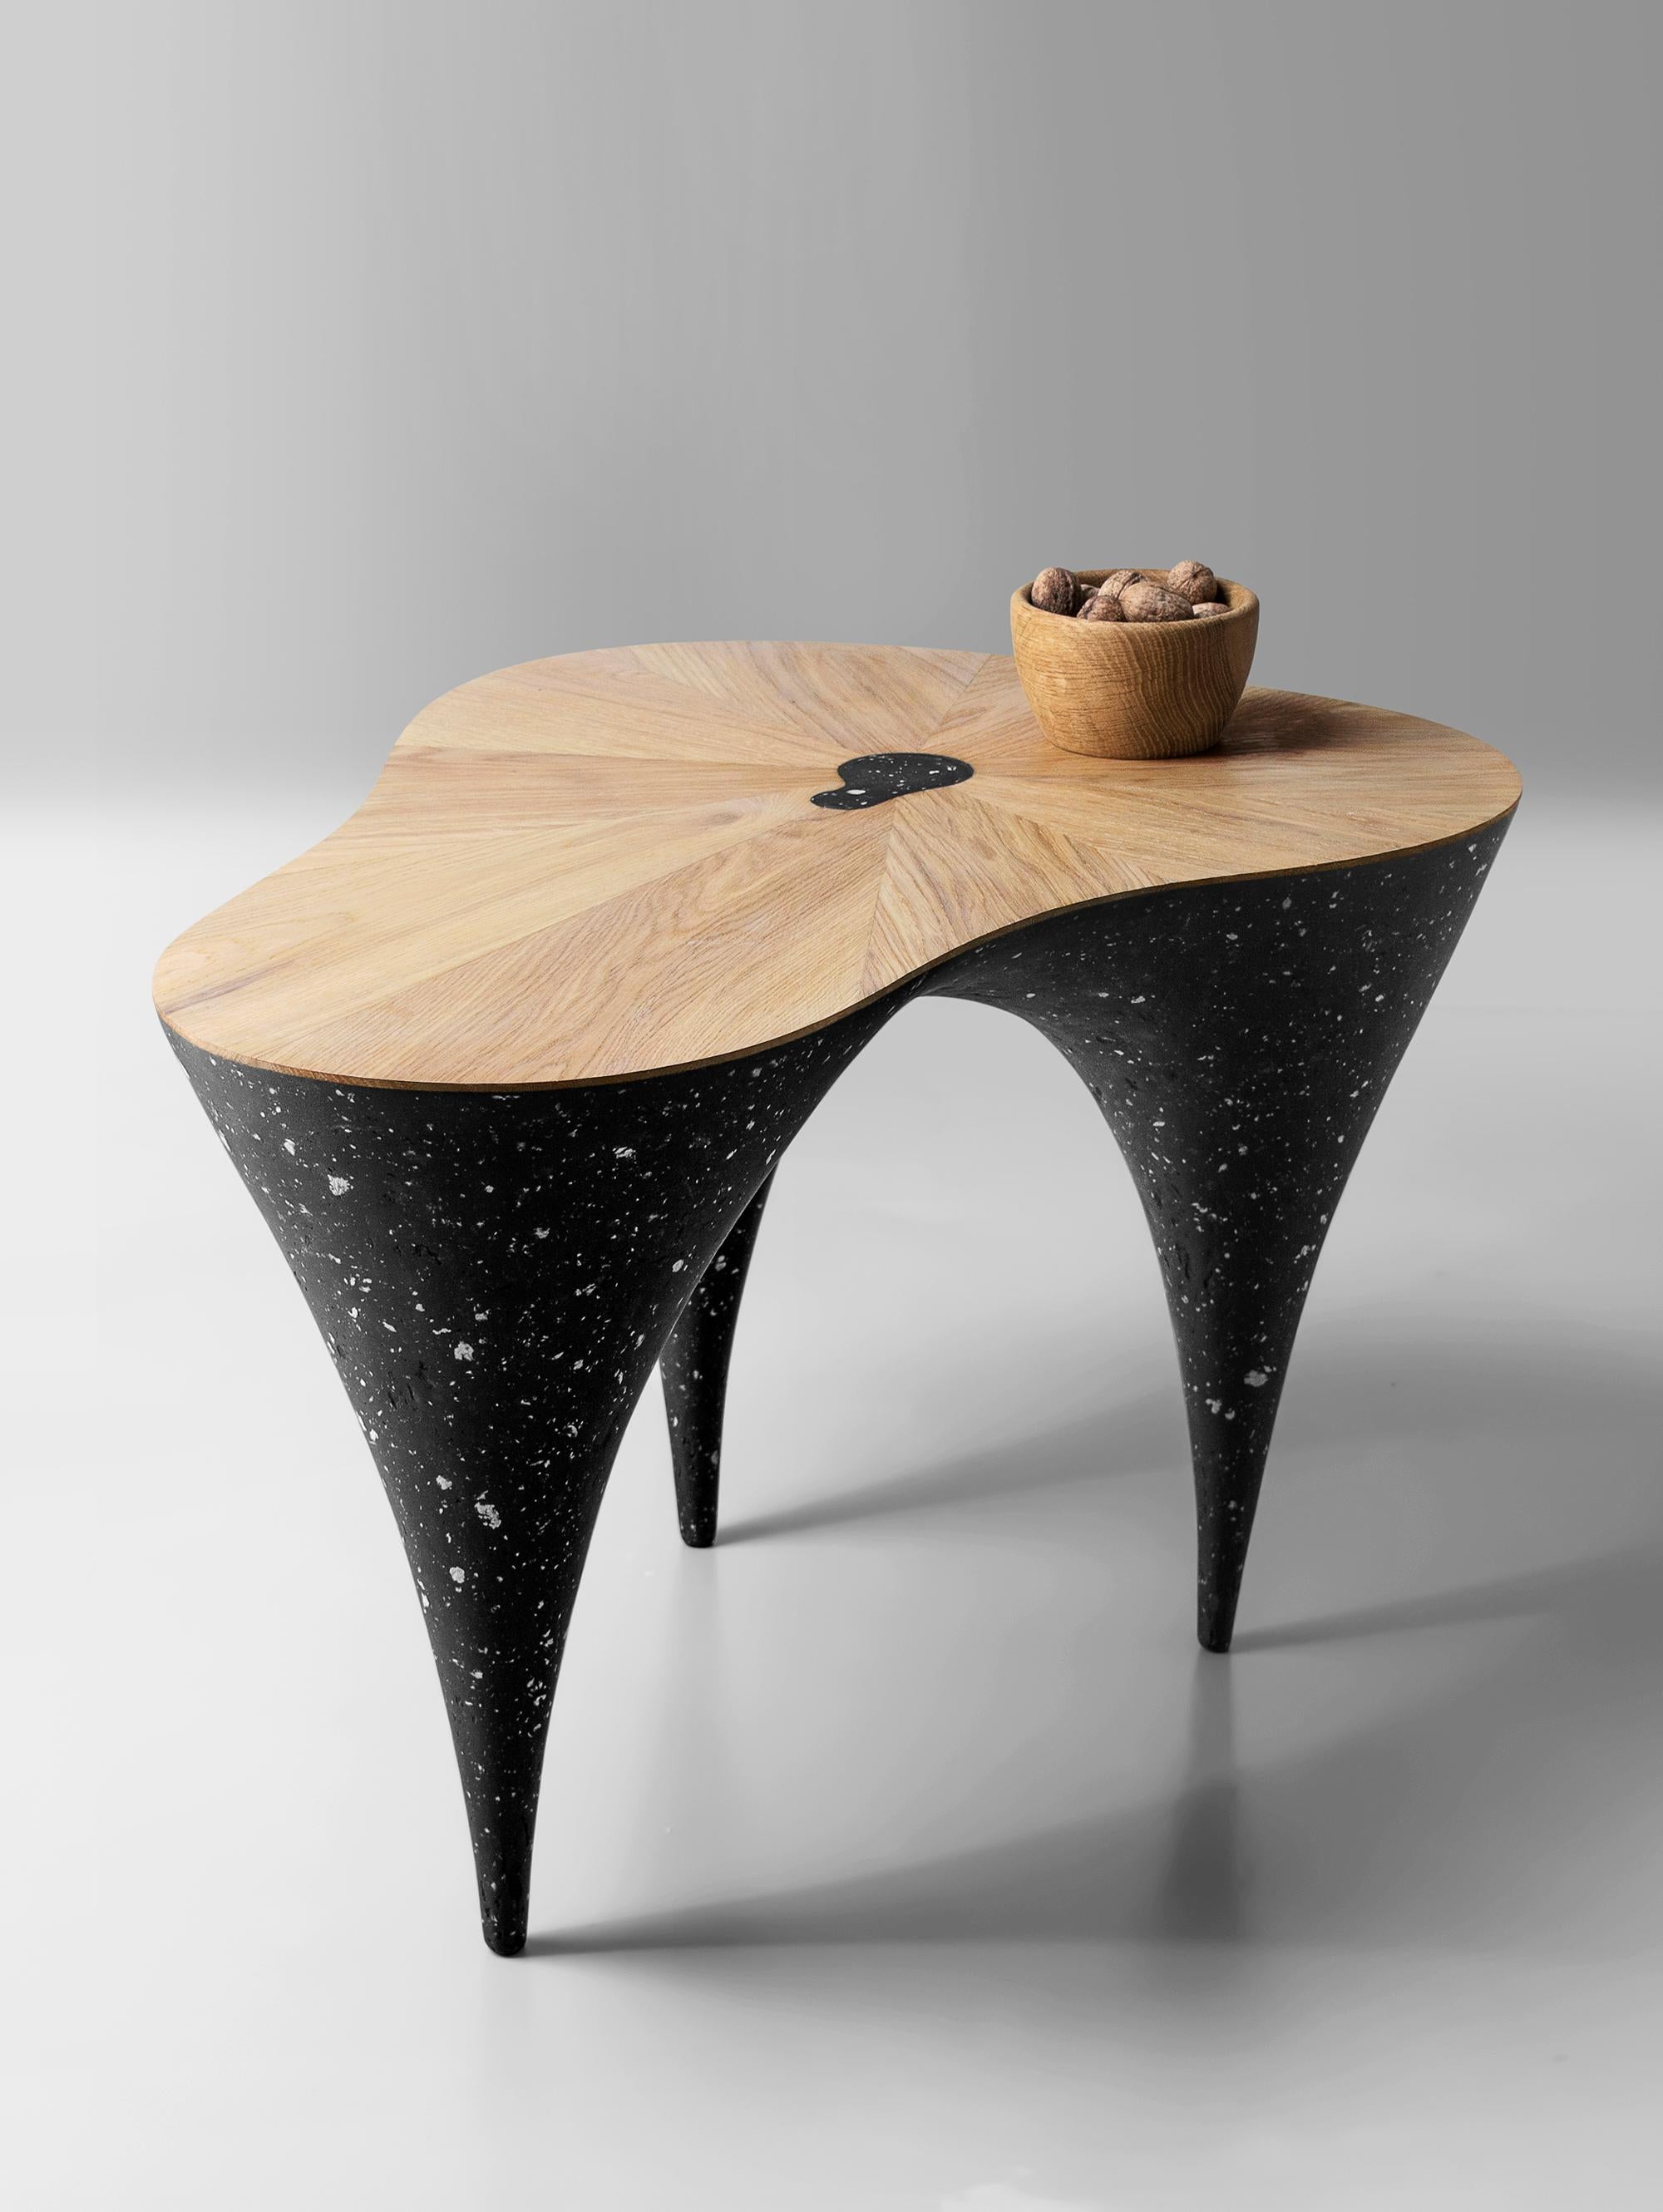 Table basse Wave par Kasanai
Dimensions : D 72 x L 55 x H 46 cm.
MATERIAL : Chêne, matériaux mixtes (ciment, papier recyclé, colle et peinture).
12 kg

L'inspiration visuelle de la table basse est une combinaison de bois naturel et de béton. Ces